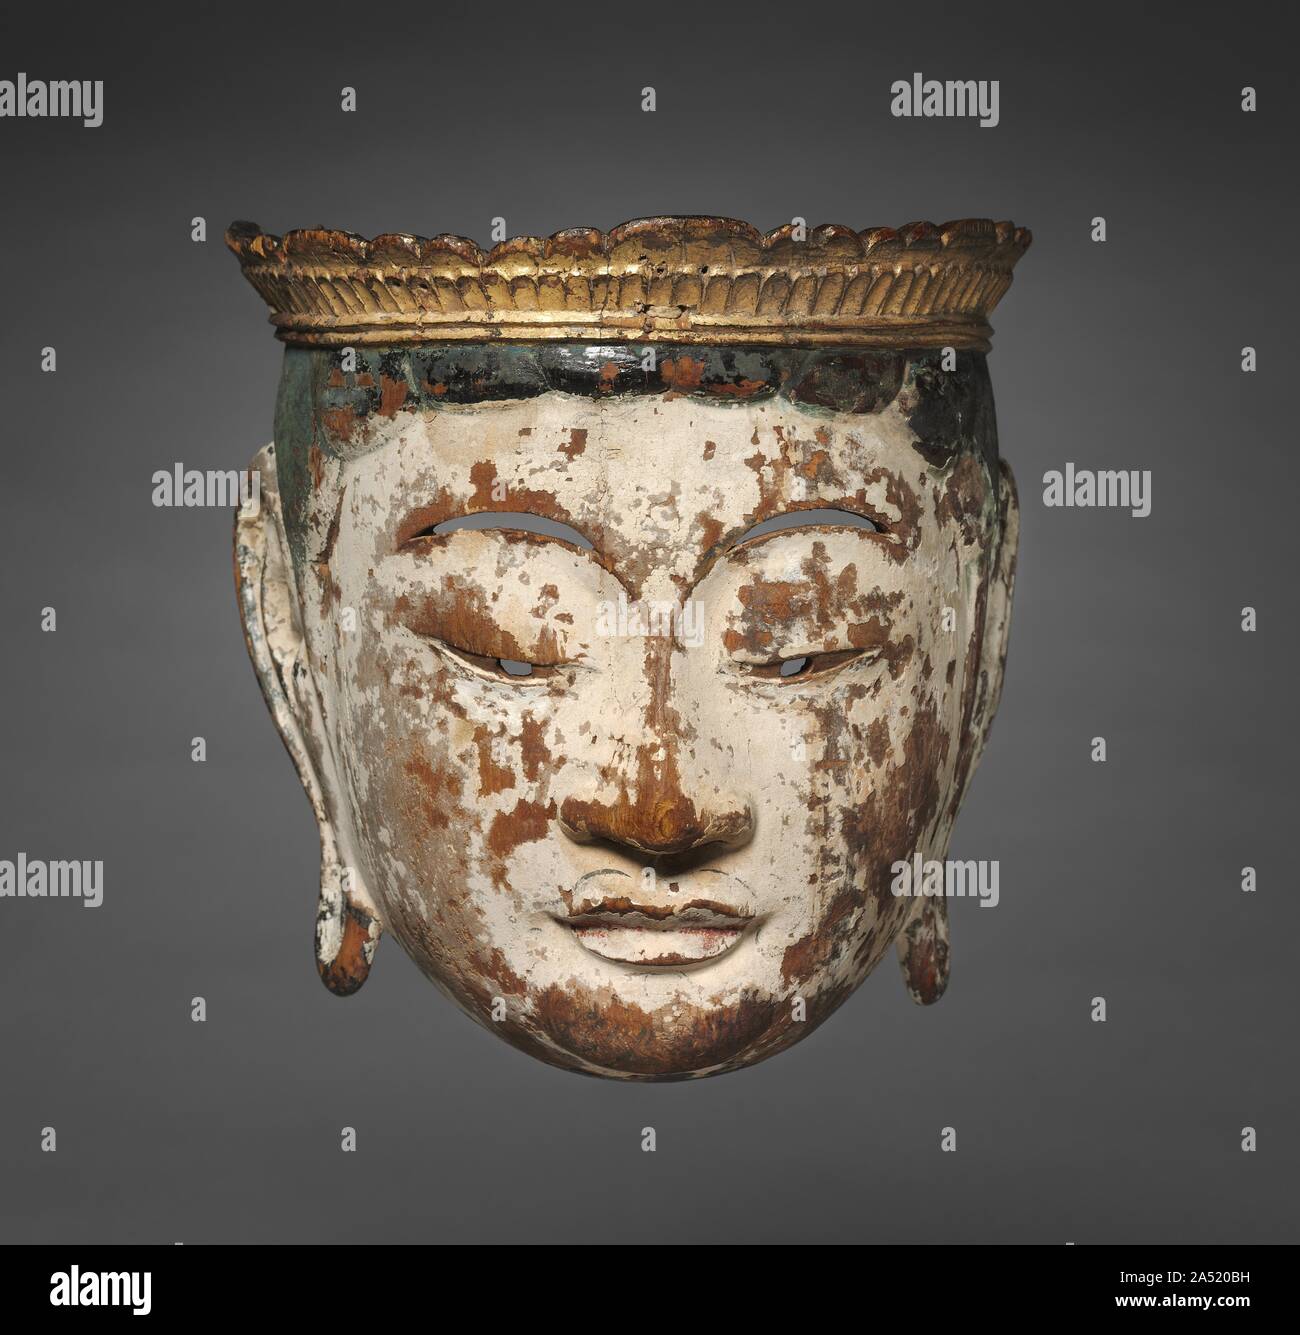 Processional Maske eines Bodhisattvas: Gyodo Maske, Ende 1100. Dieses zeremoniell Maske wurde in der religiösen Prozessionen, besonders beliebt waren in der Heian-Zeit (794-1185) verwendet. In dieser Performance über den Westlichen Paradies, die letzte Ruhestätte von Seelen in das reine Land Buddhismus, 25 Akteure tragen Bodhisattva Masken würde ein Schauspieler porträtiert die Amida, der Buddha der Westlichen Paradies. Diese Leistung, die von der kräftigen Drumming begleitet, bot die Vision von der Herrlichkeit des Amida Paradies für Liebhaber. Stockfoto